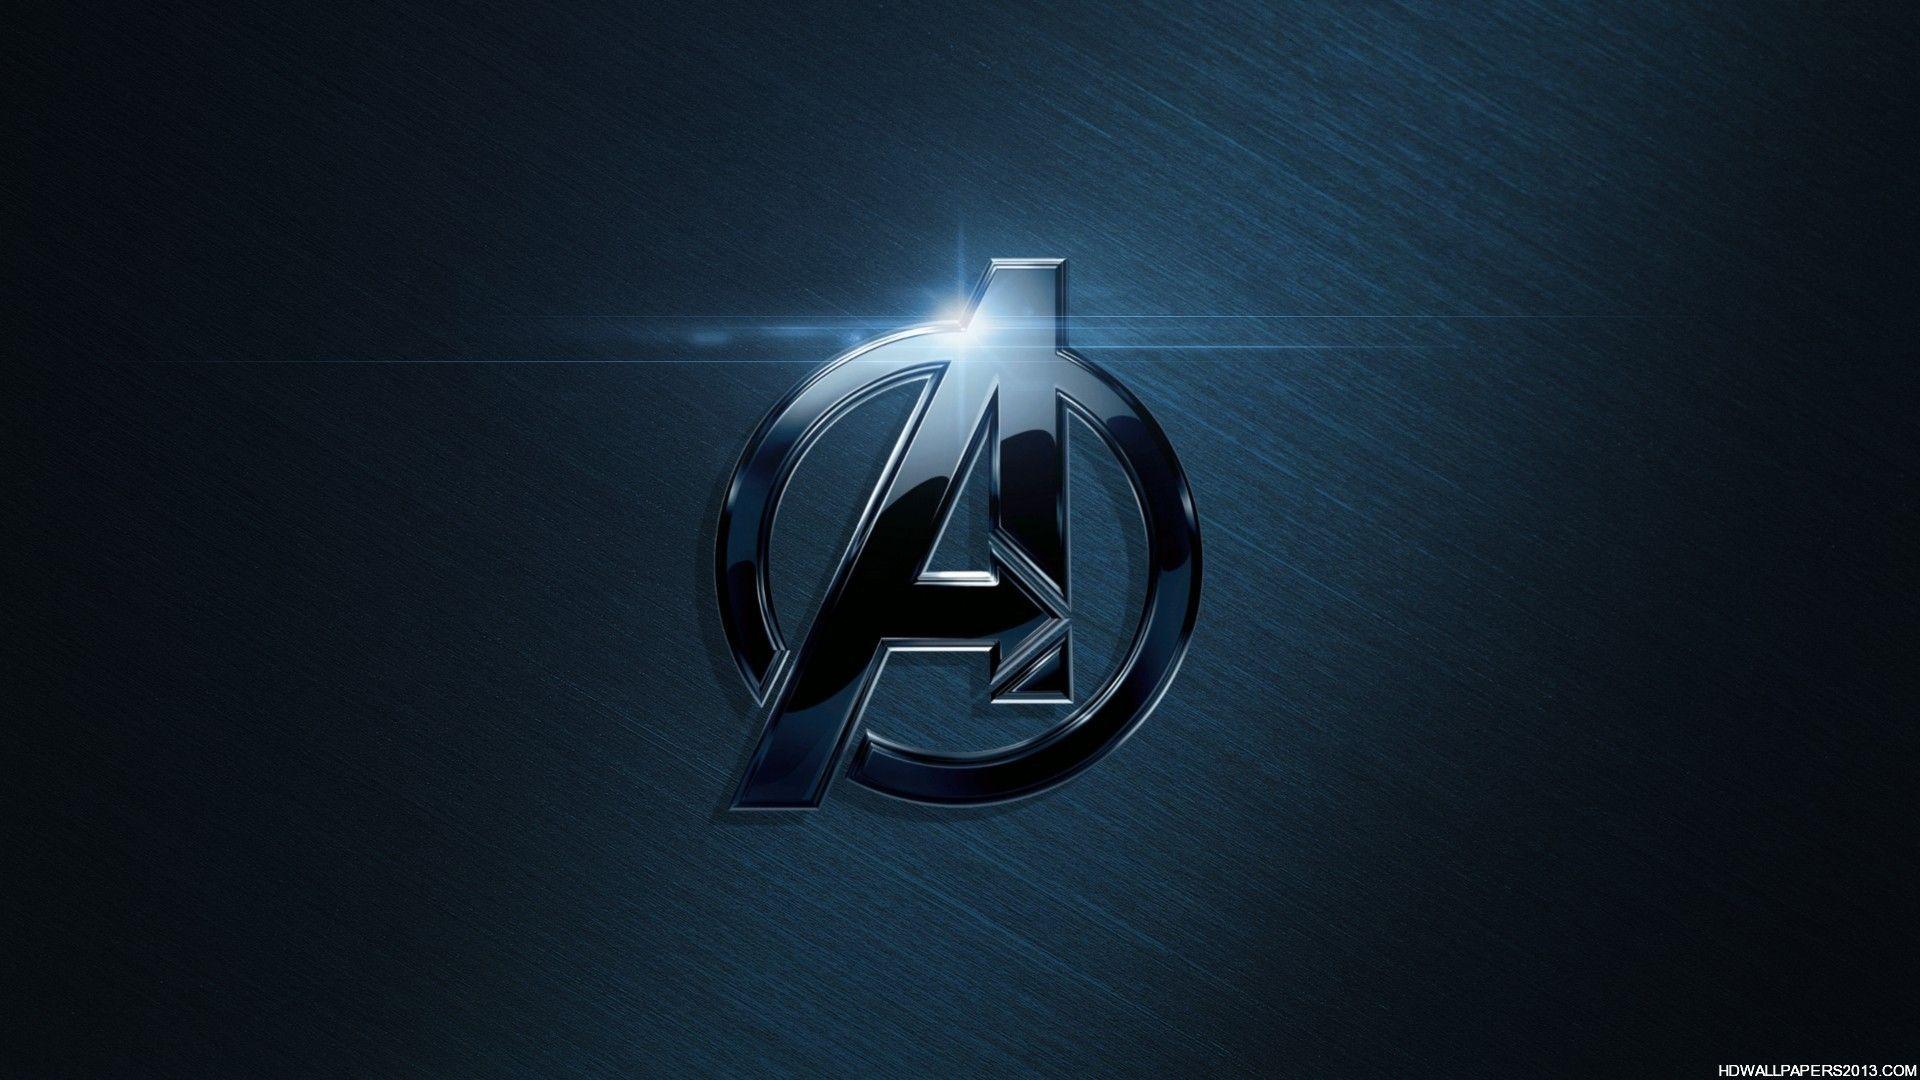 Avengers Logo Wallpaper. High Definition Wallpaper, High